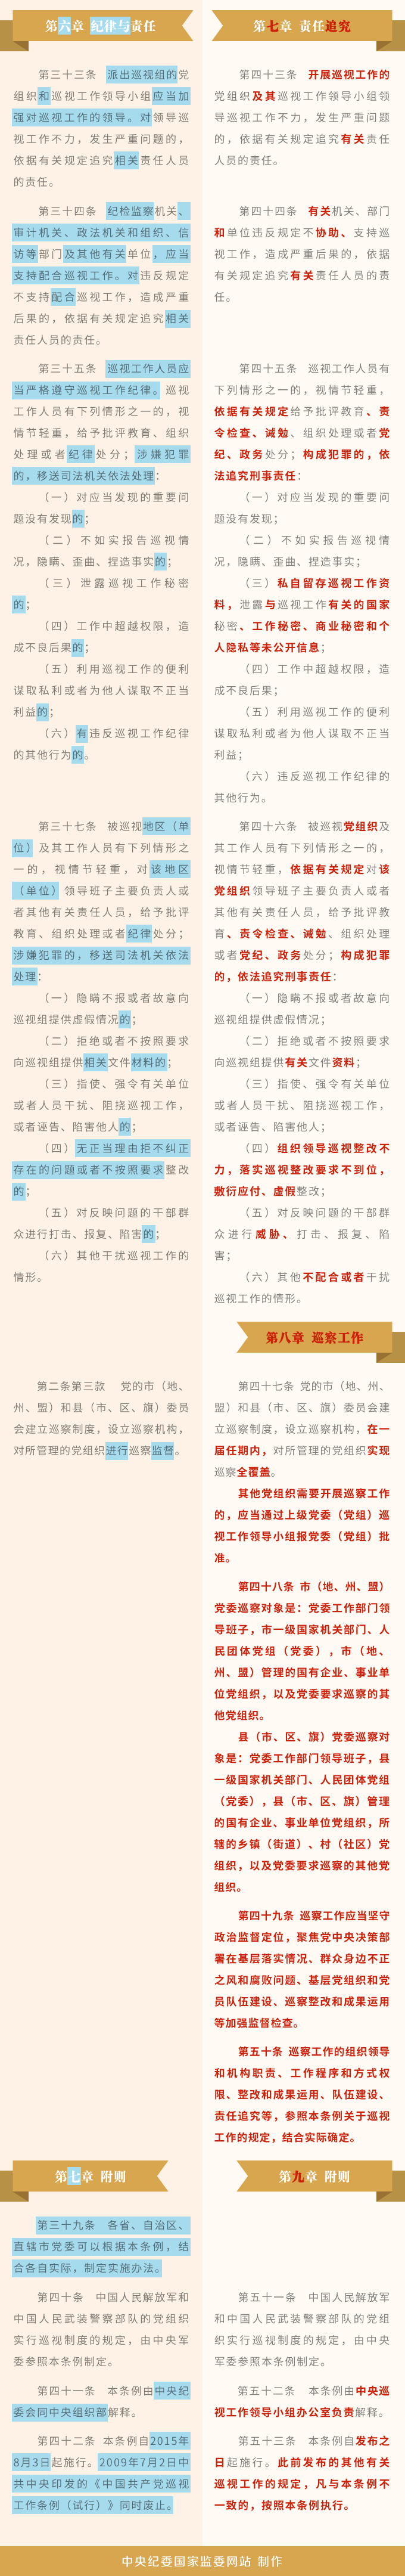 《中国共产党巡视工作条例》修订条文对照表